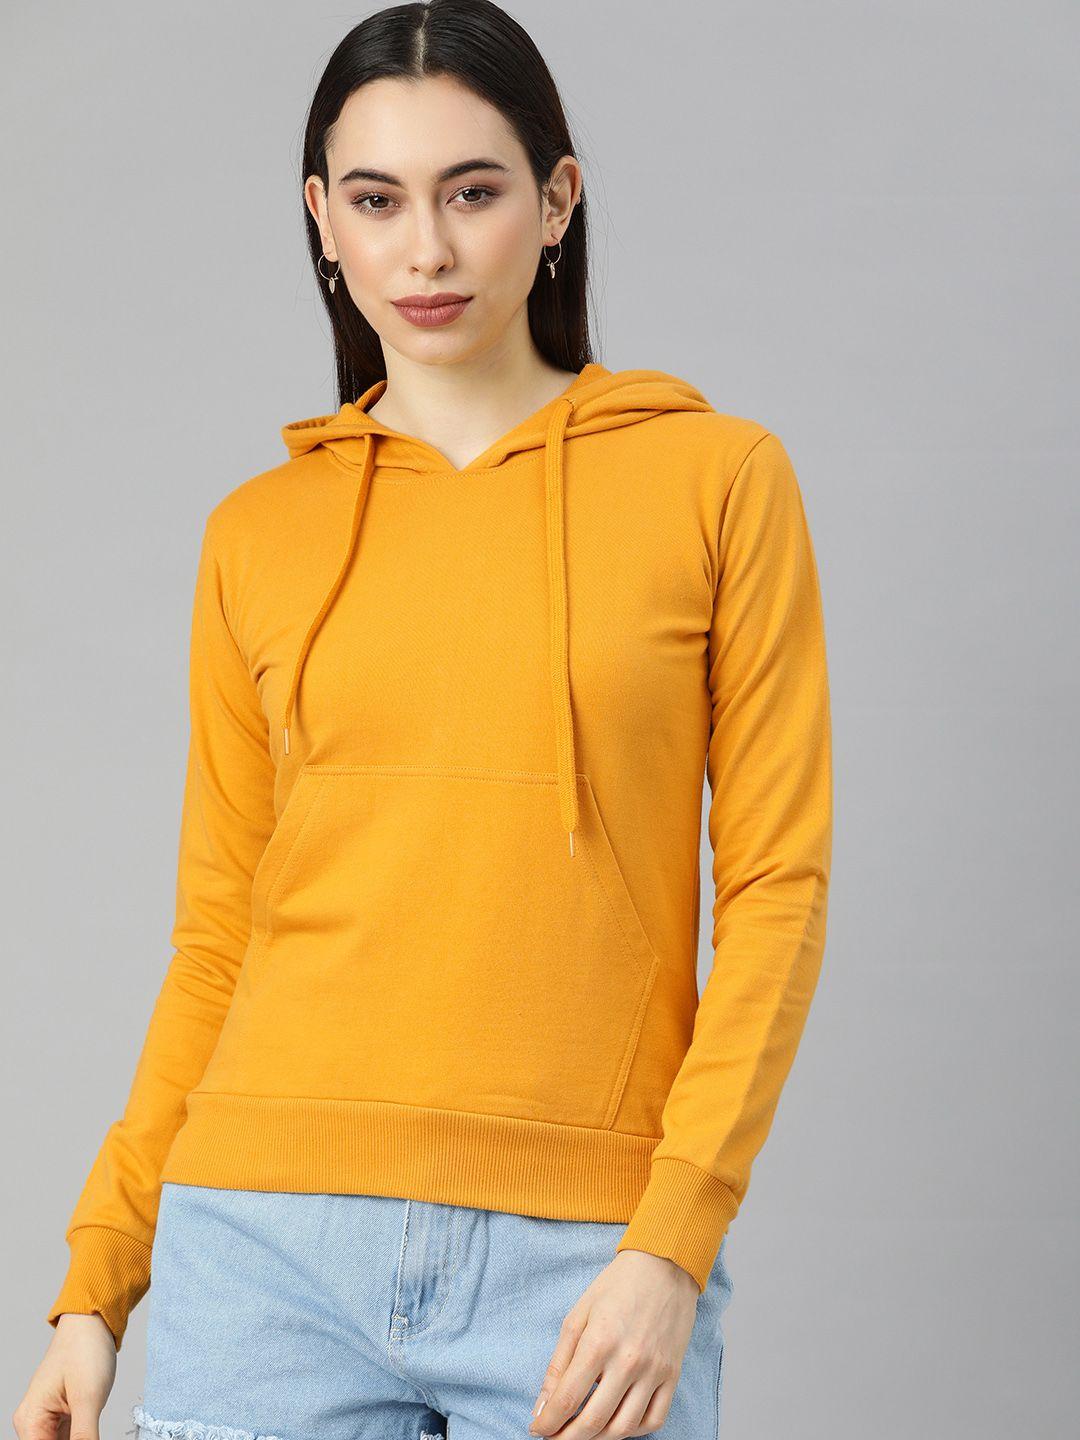 juneberry women yellow solid hooded sweatshirt